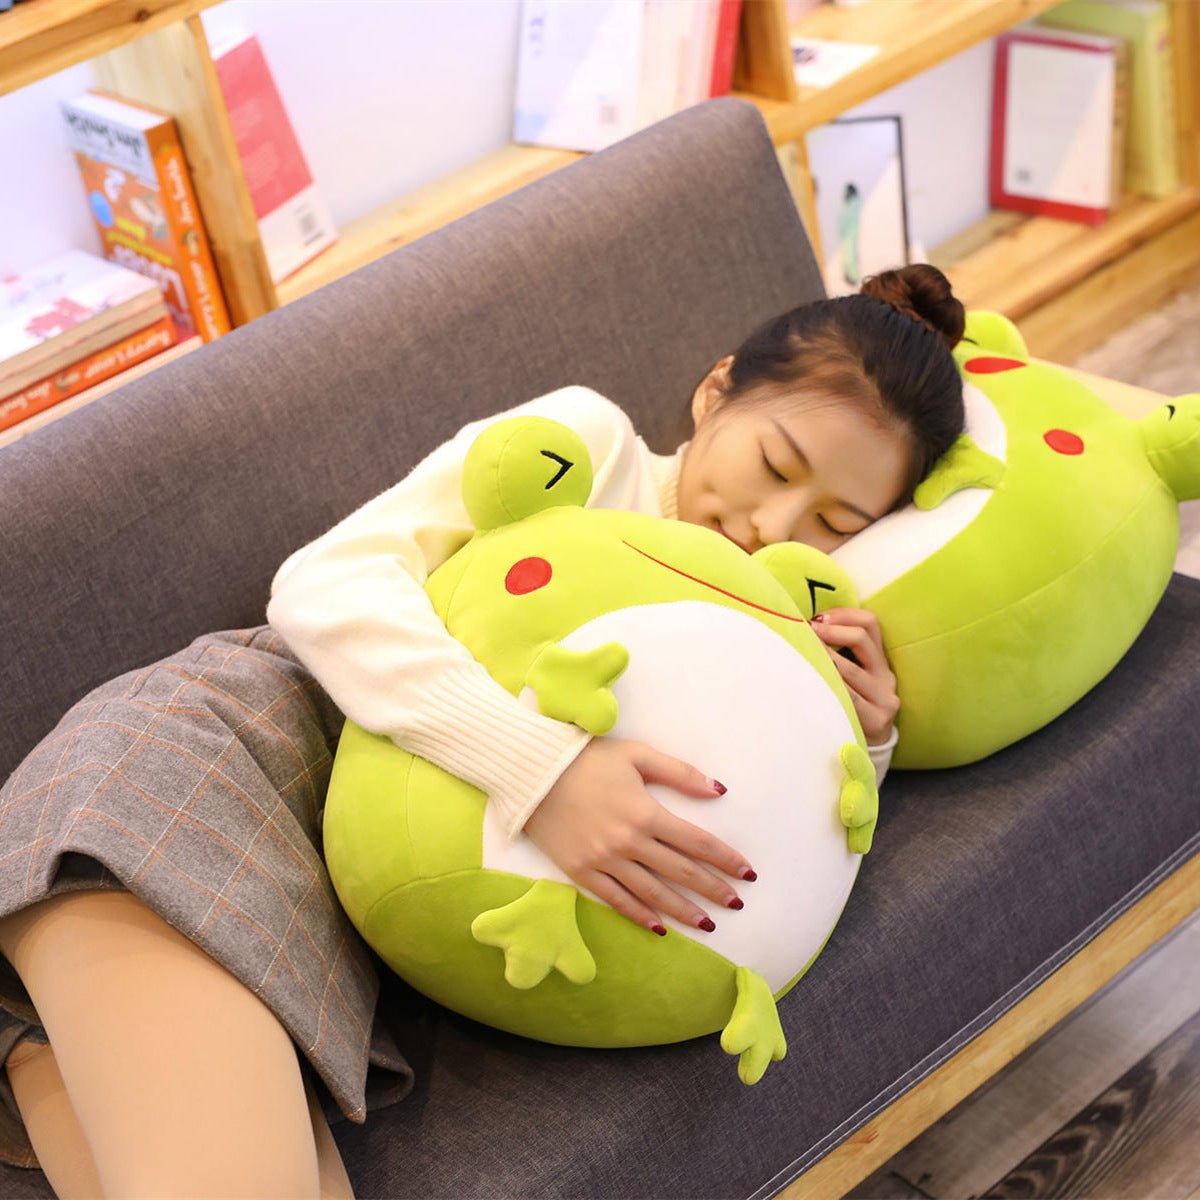 Green Frog Plush Toy Pillow - TOY-PLU-33801 - Yangzhou yiqingzhou - 42shops